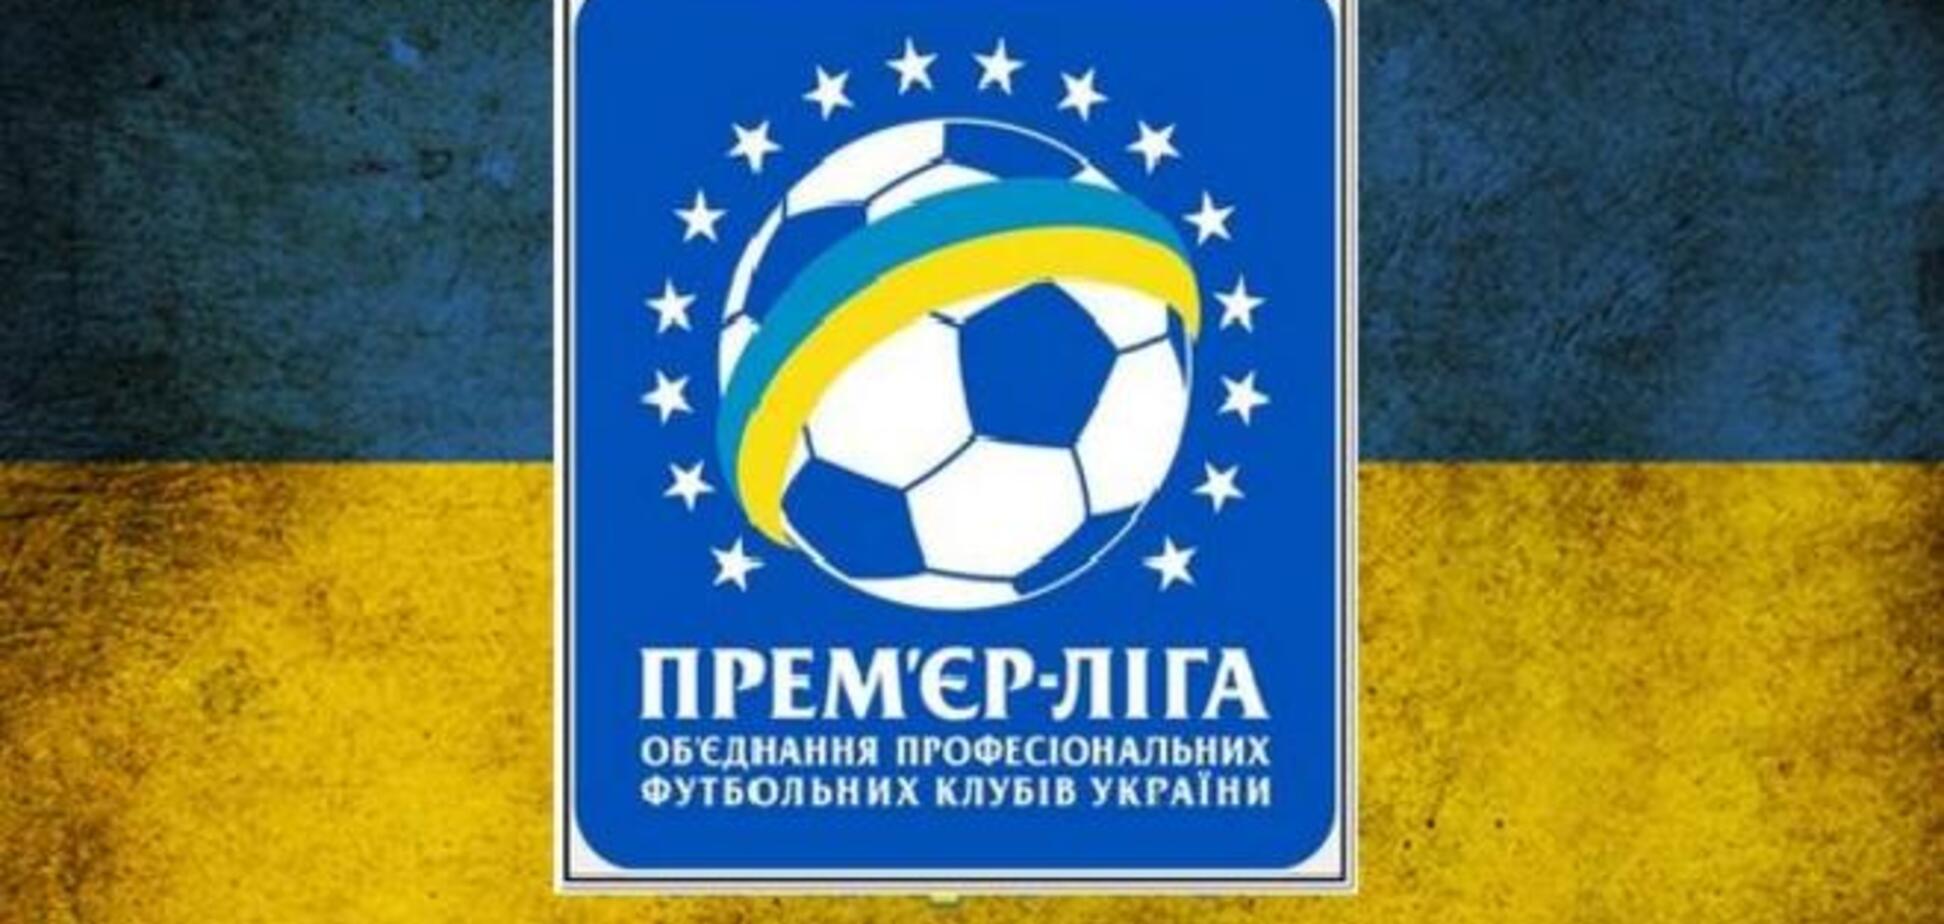 Чемпионат Украины серьезно упал в мировом рейтинге